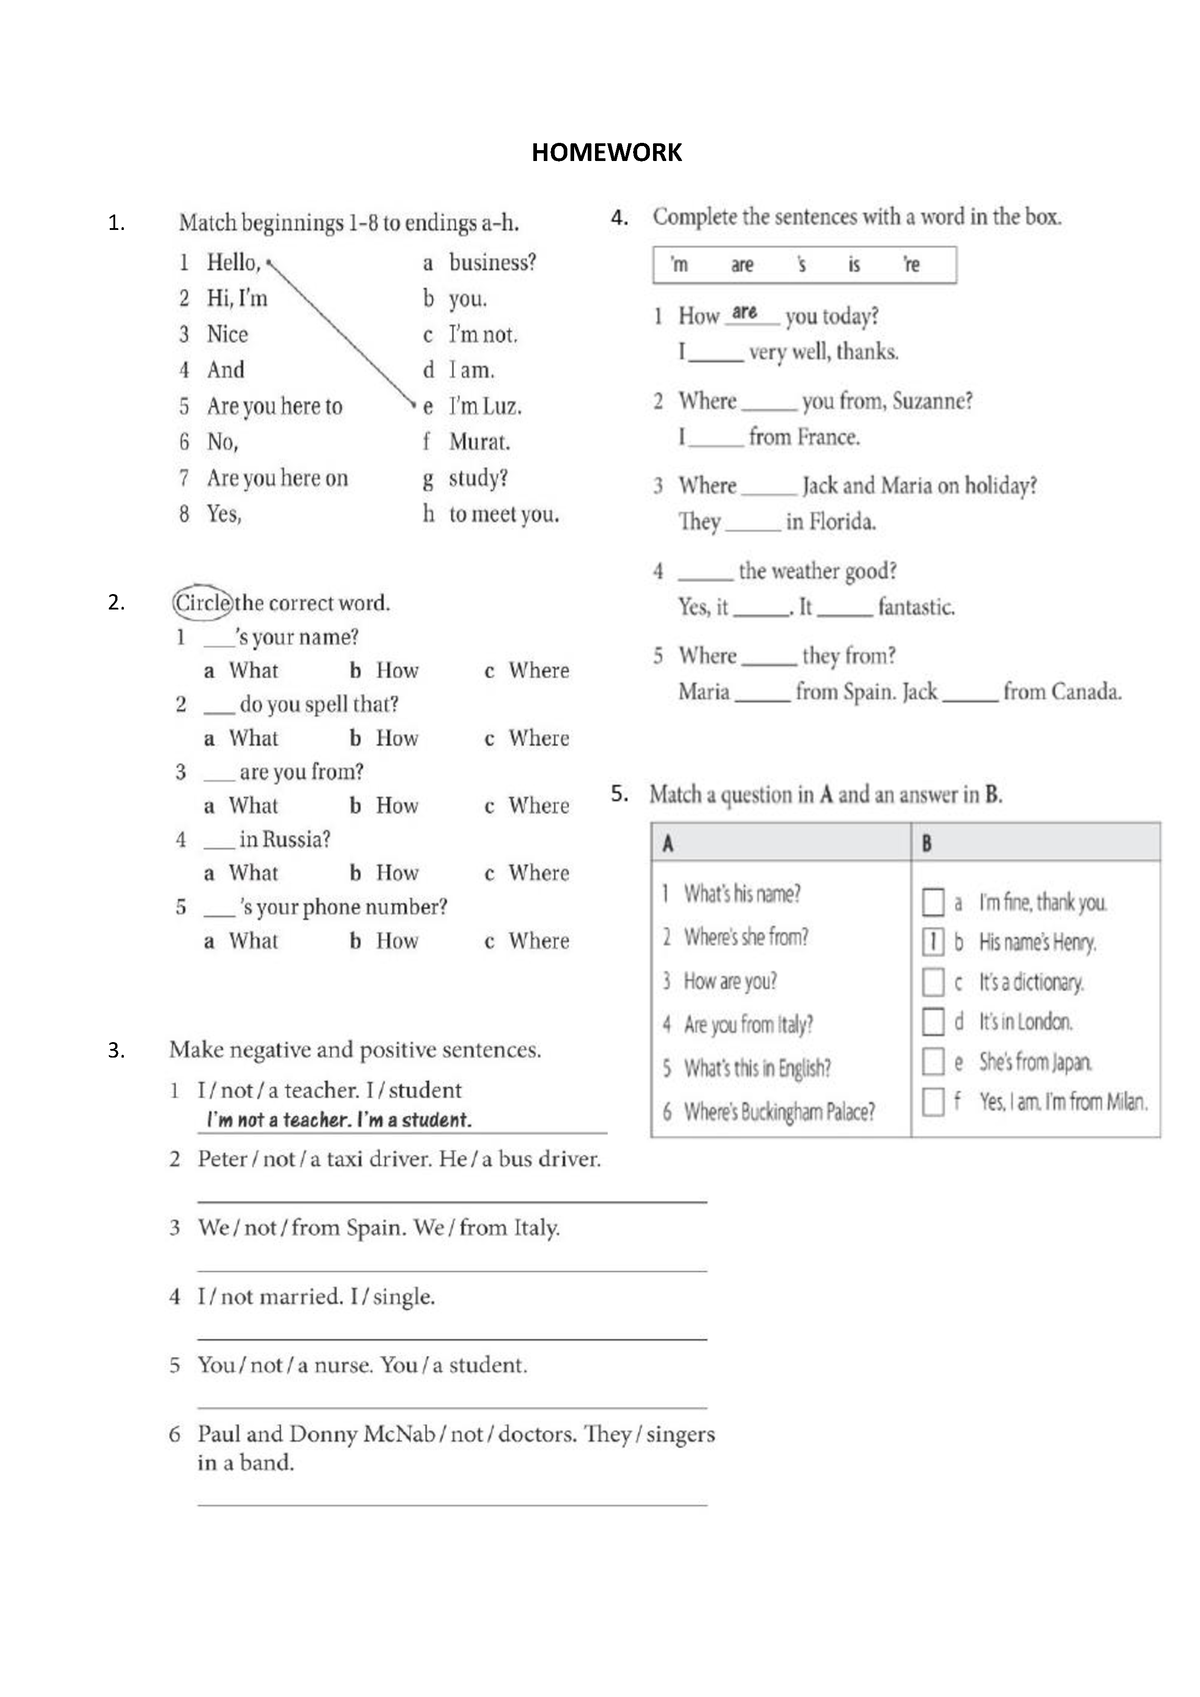 lista de homework en ingles